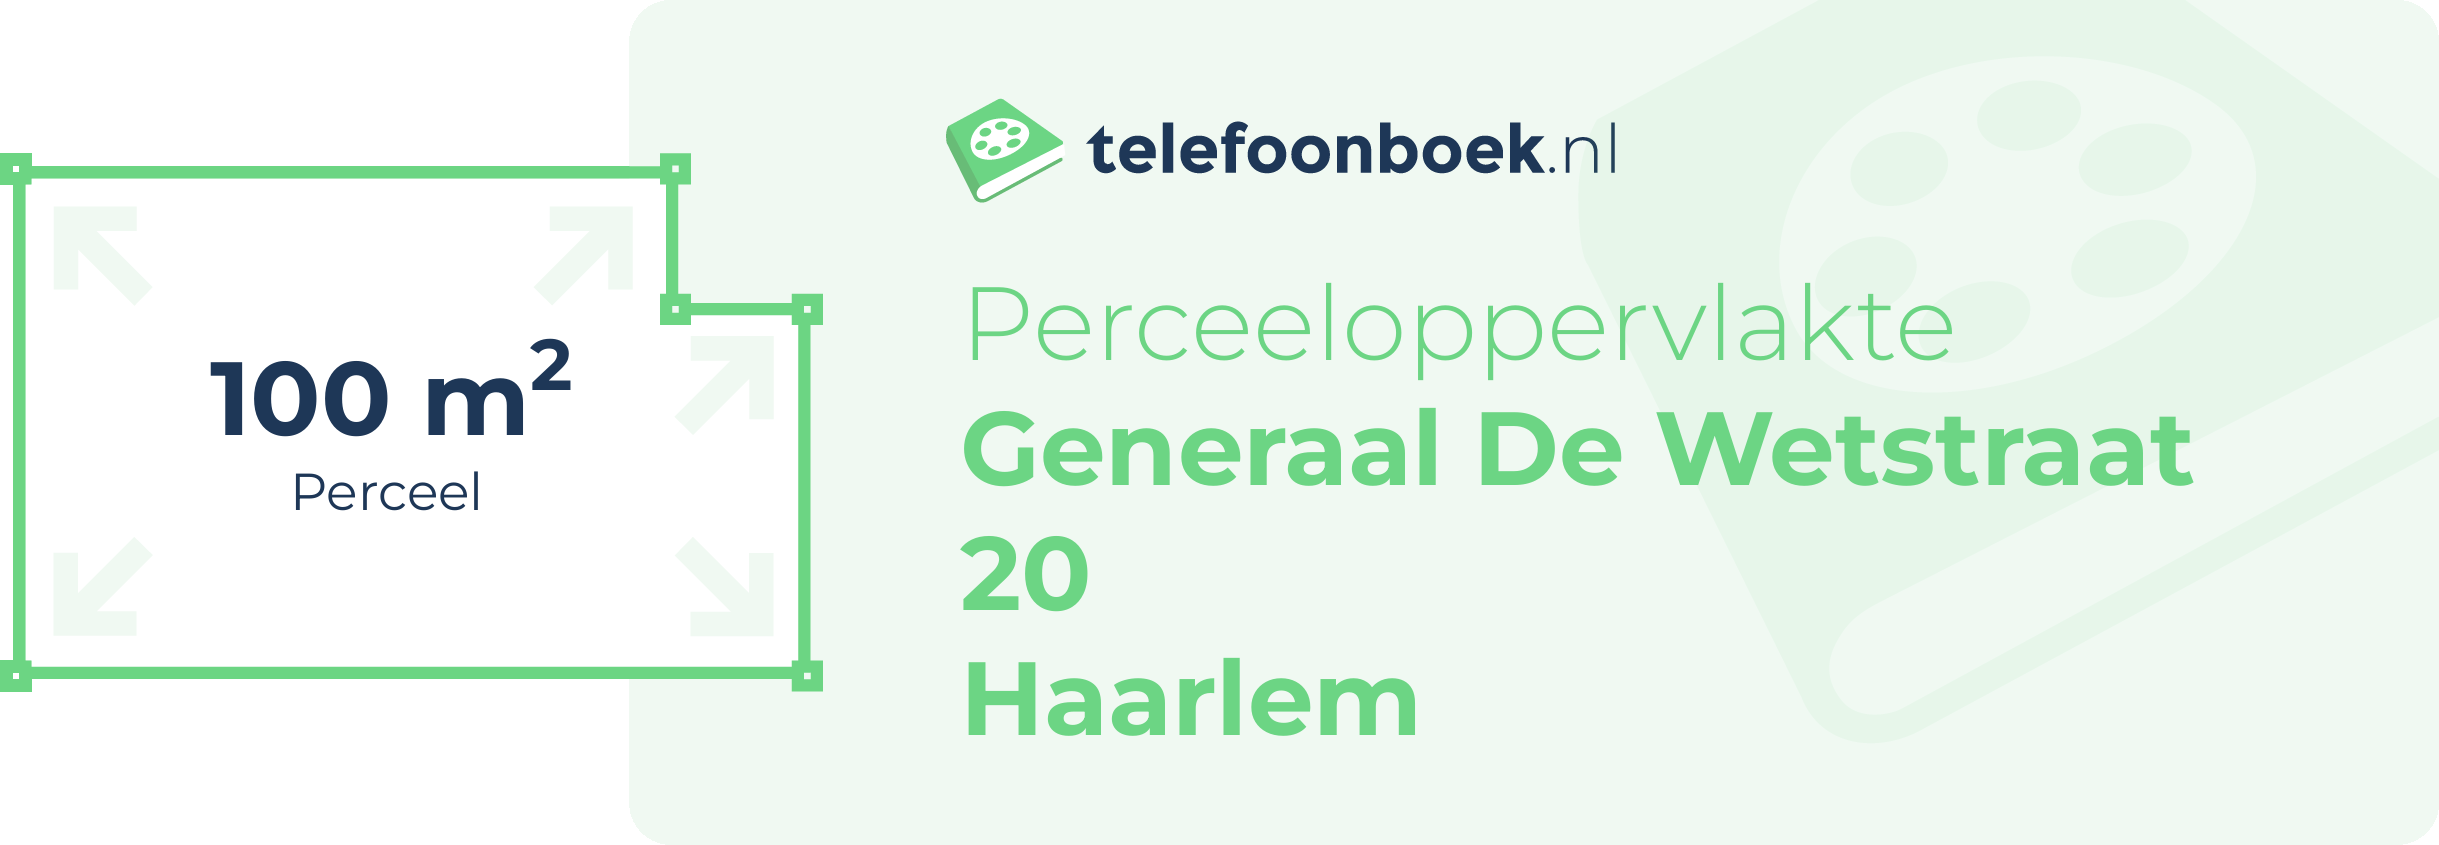 Perceeloppervlakte Generaal De Wetstraat 20 Haarlem